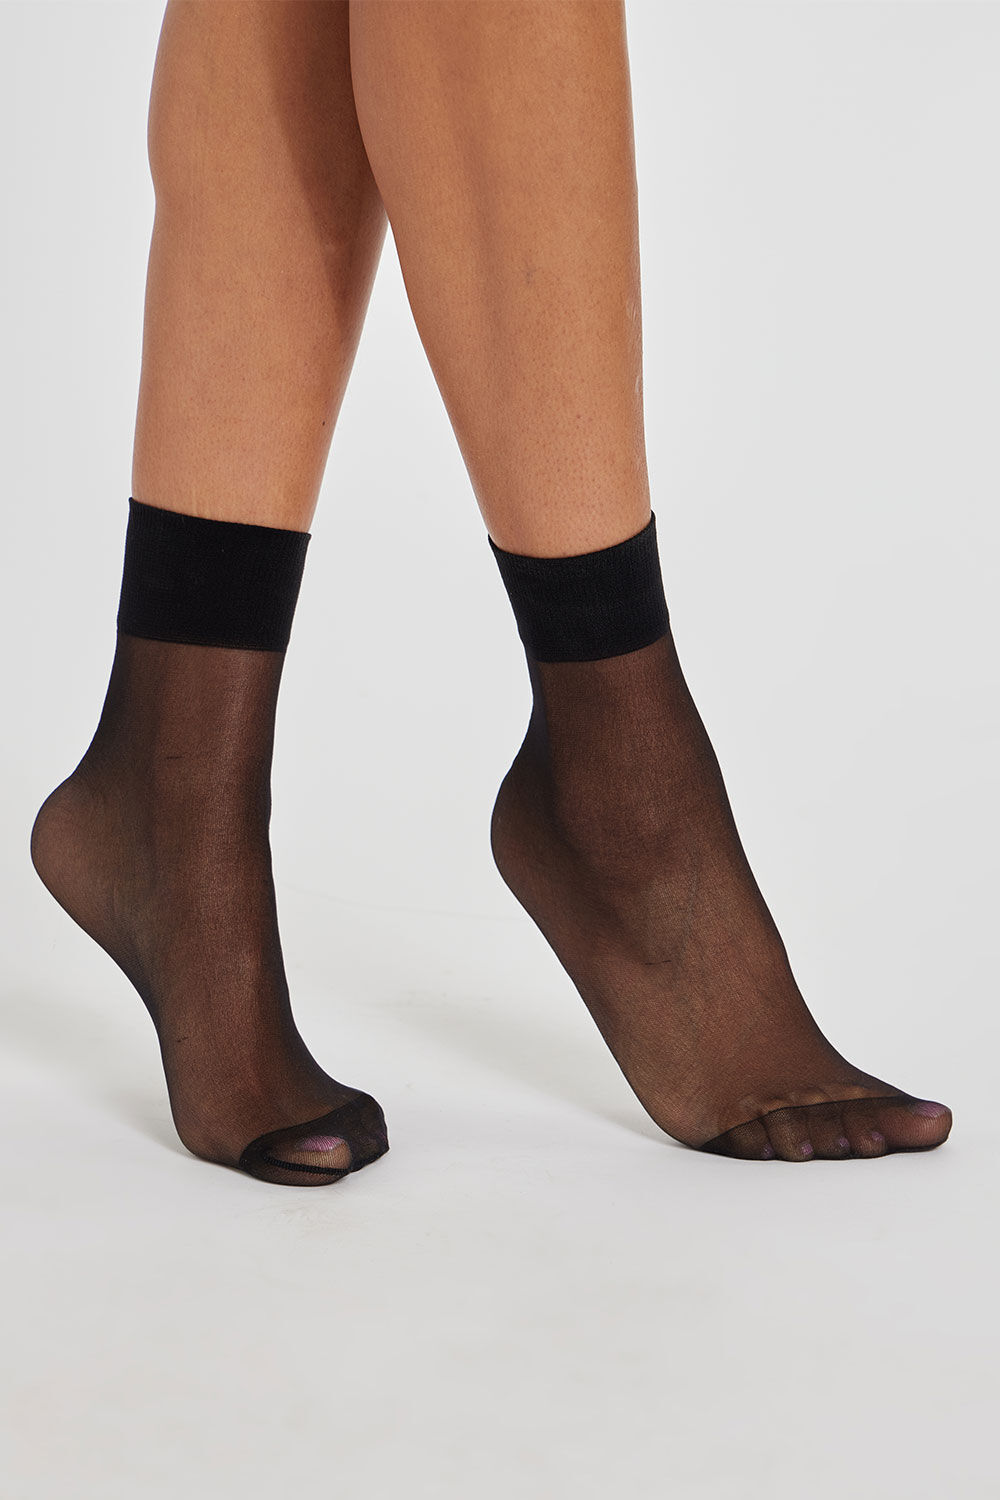 Bonmarche 5 Pack of 15 Denier Ankle Pop Socks